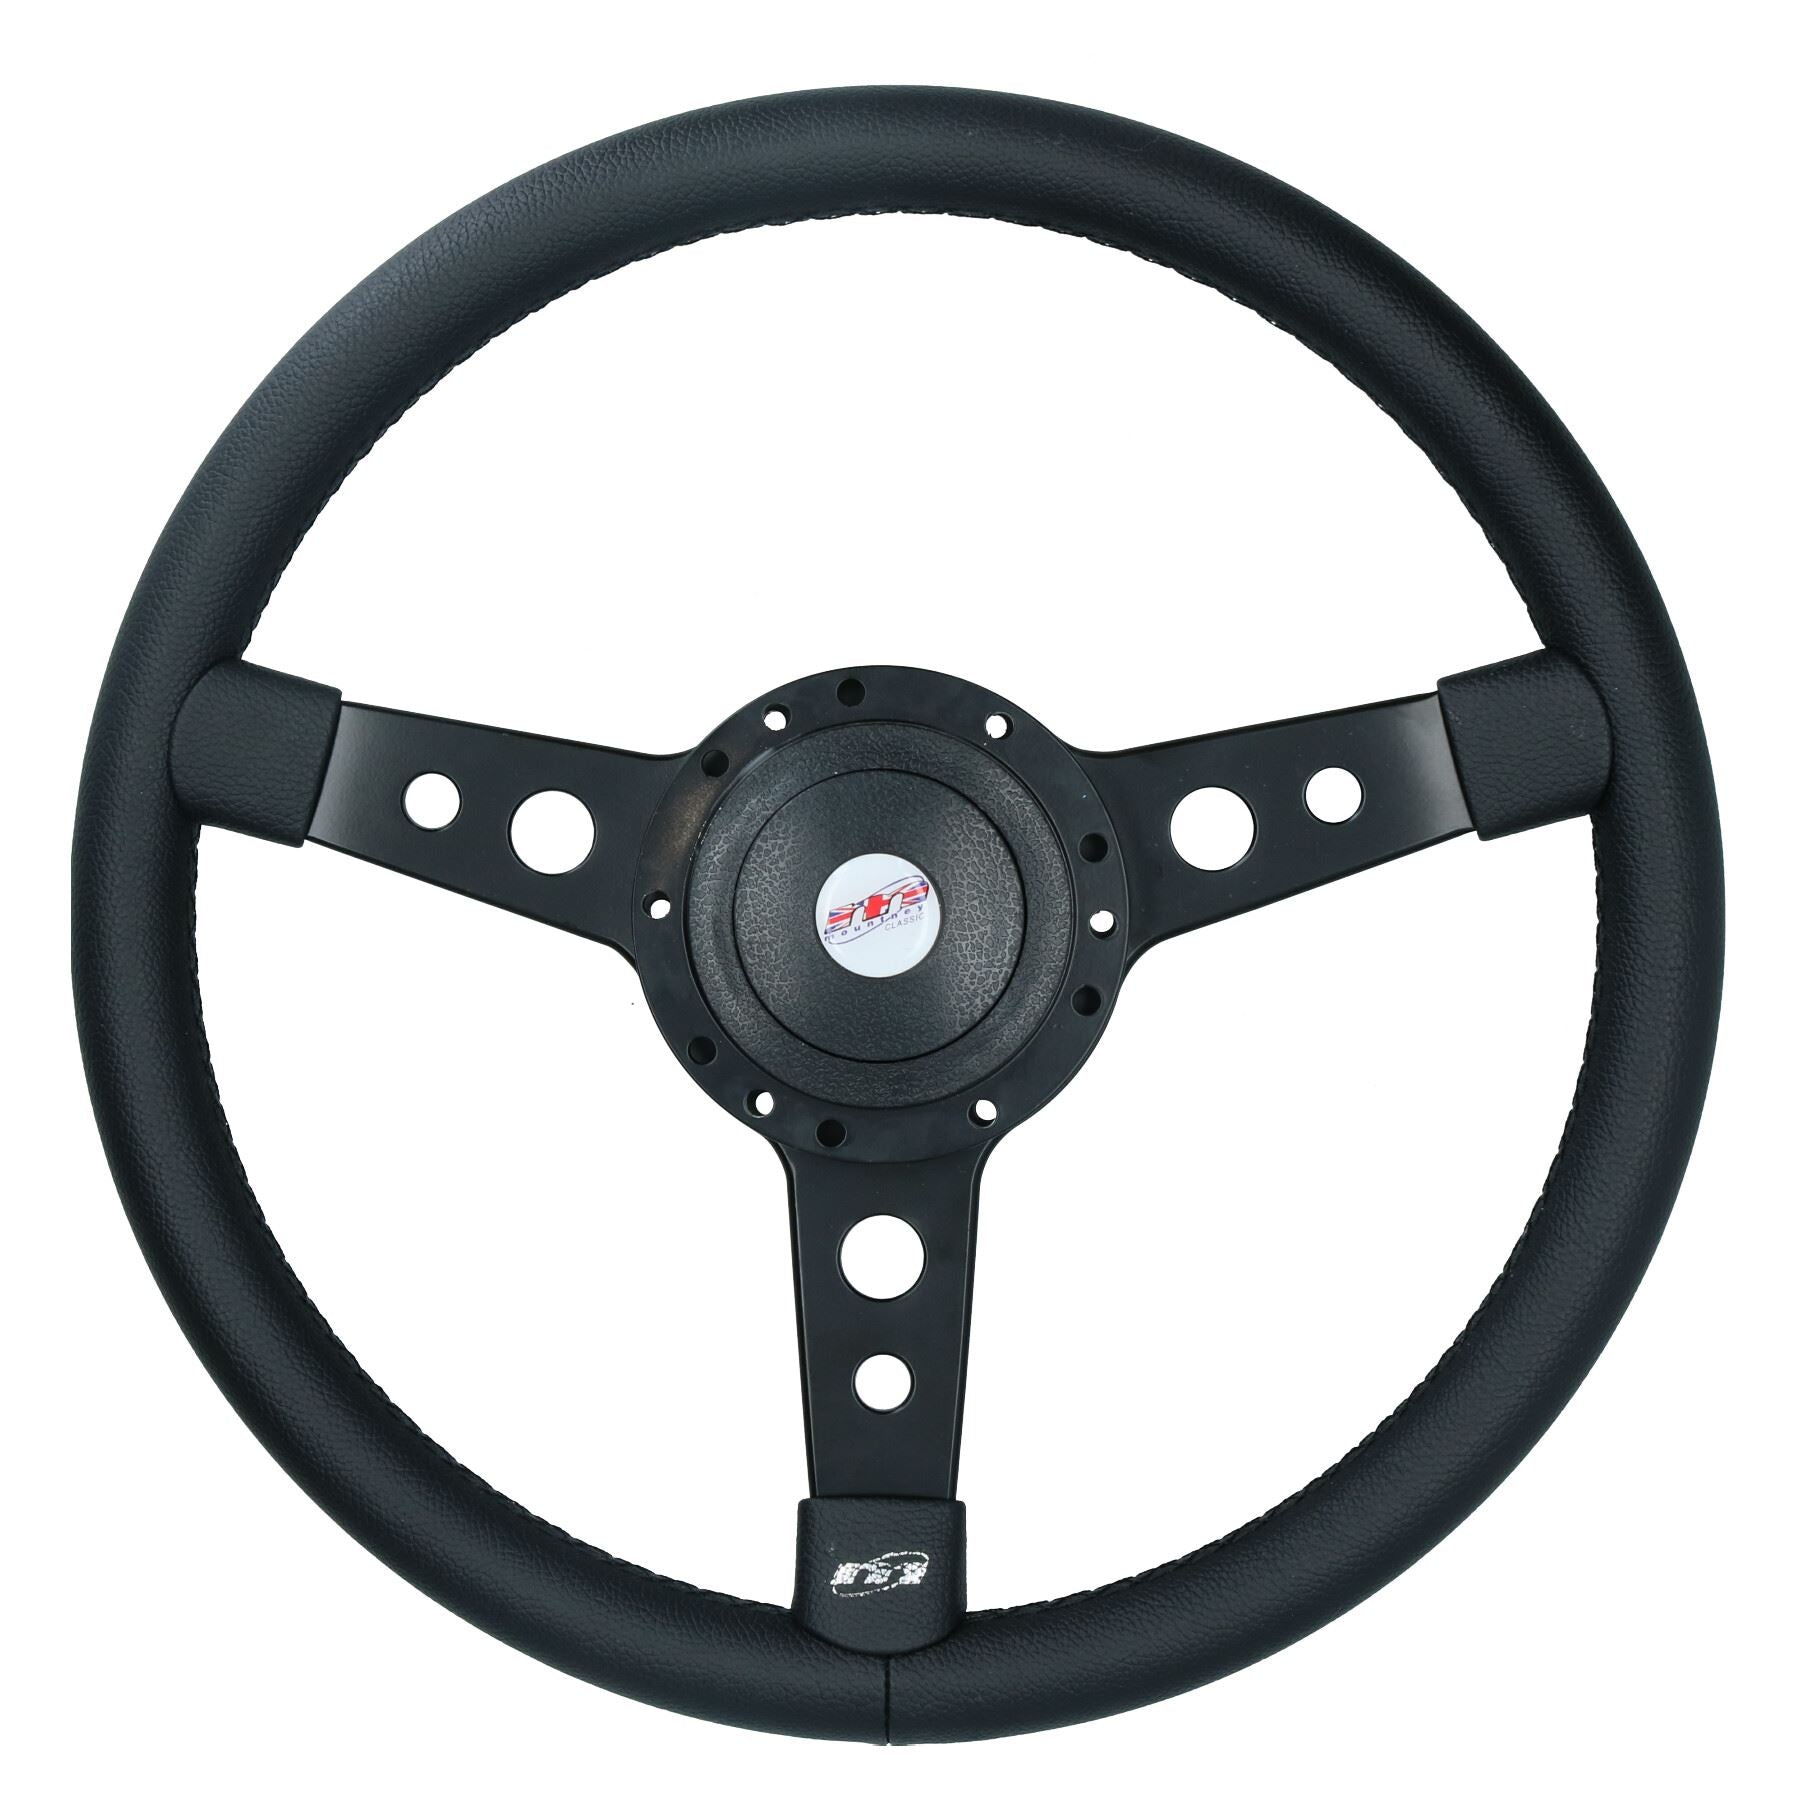 Vinyl Steering Wheel & Boss to fit Austin Leyland Morris 1100 1300 Minor 1000 All Years